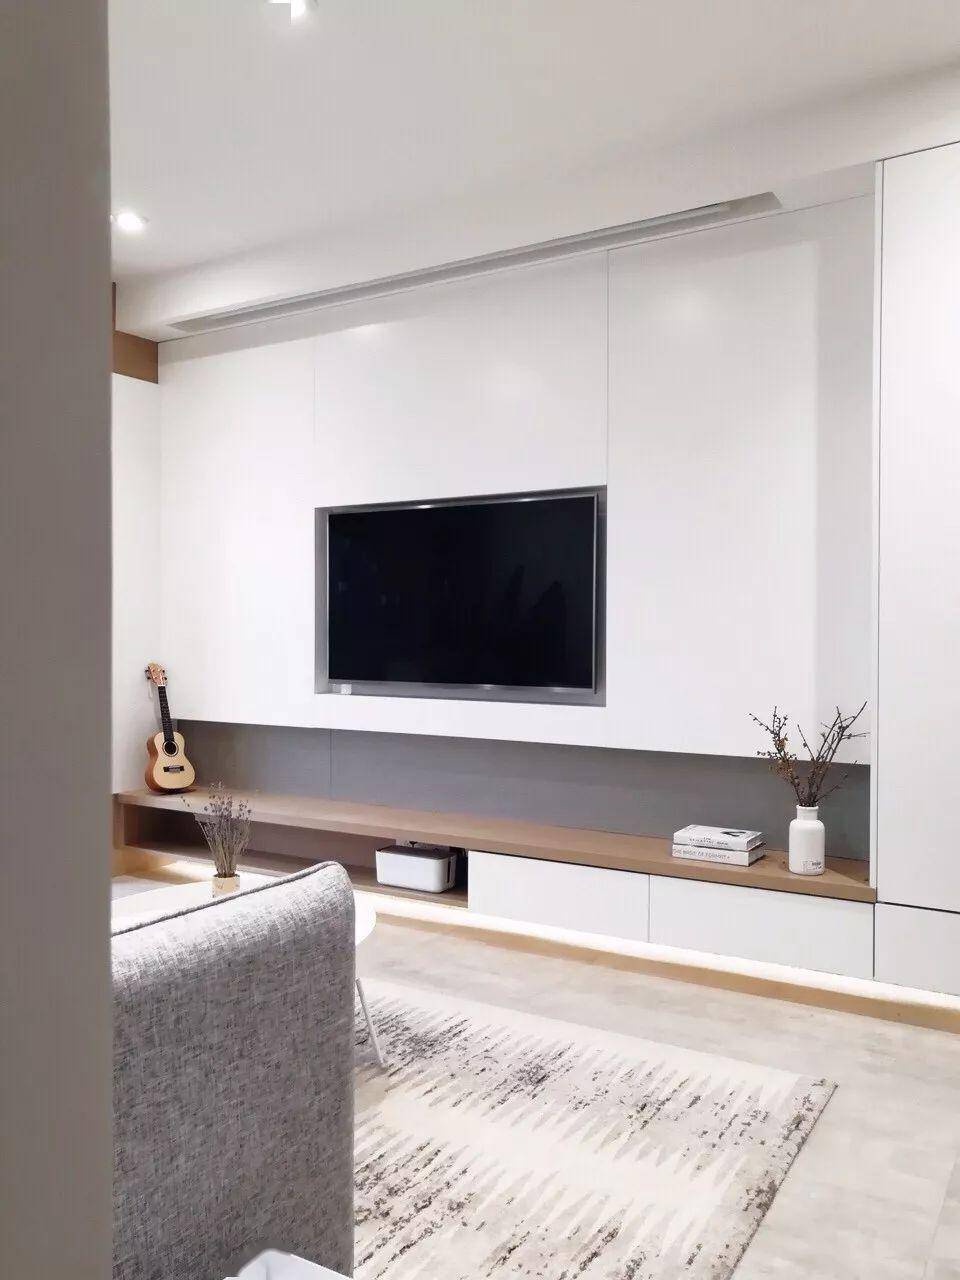 电视机壁挂安装,装出简洁的电视墙,看起来就很大方!